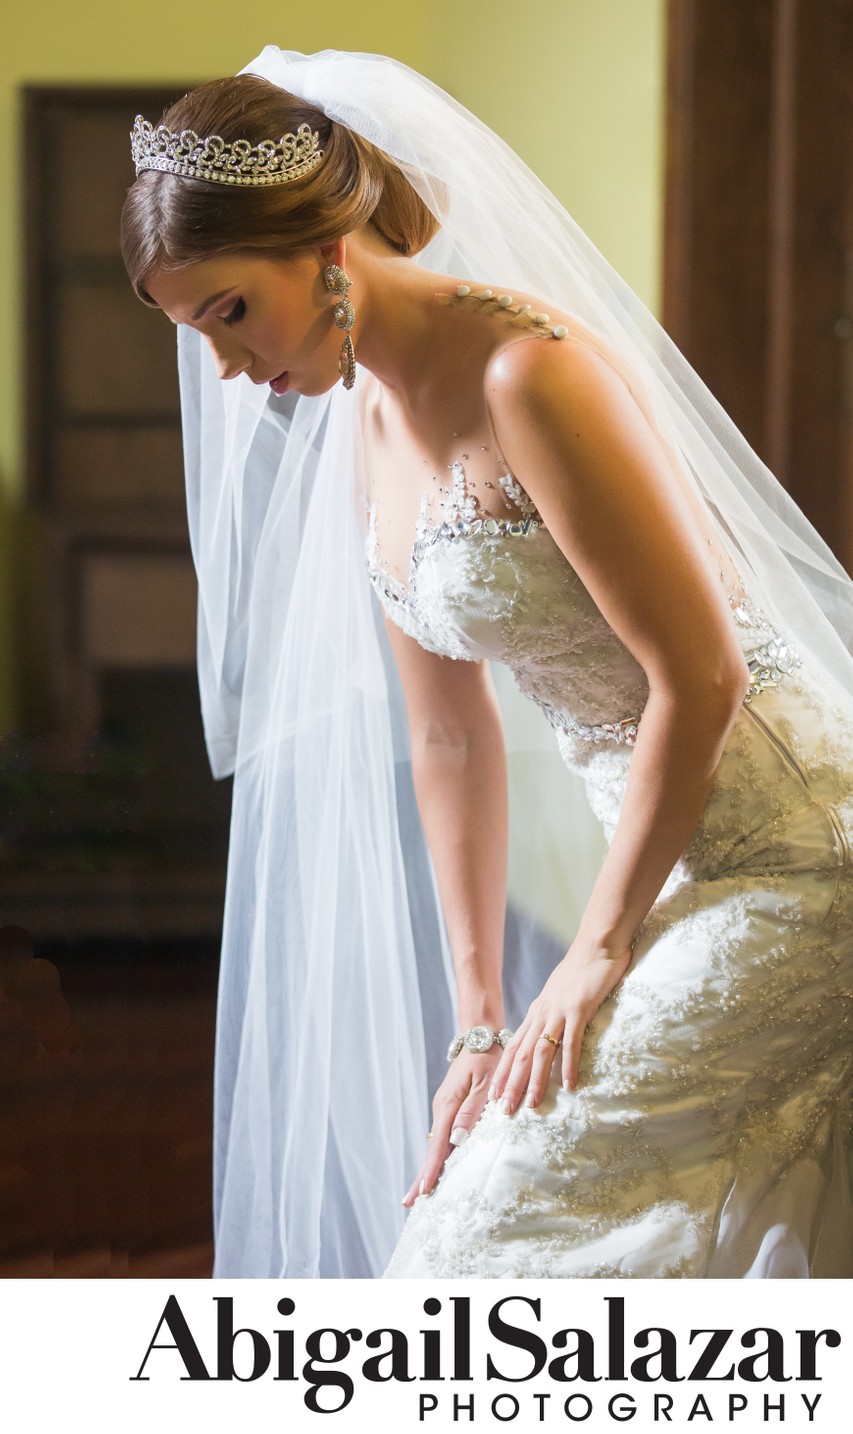 Luxury wedding photography: Beautiful bride